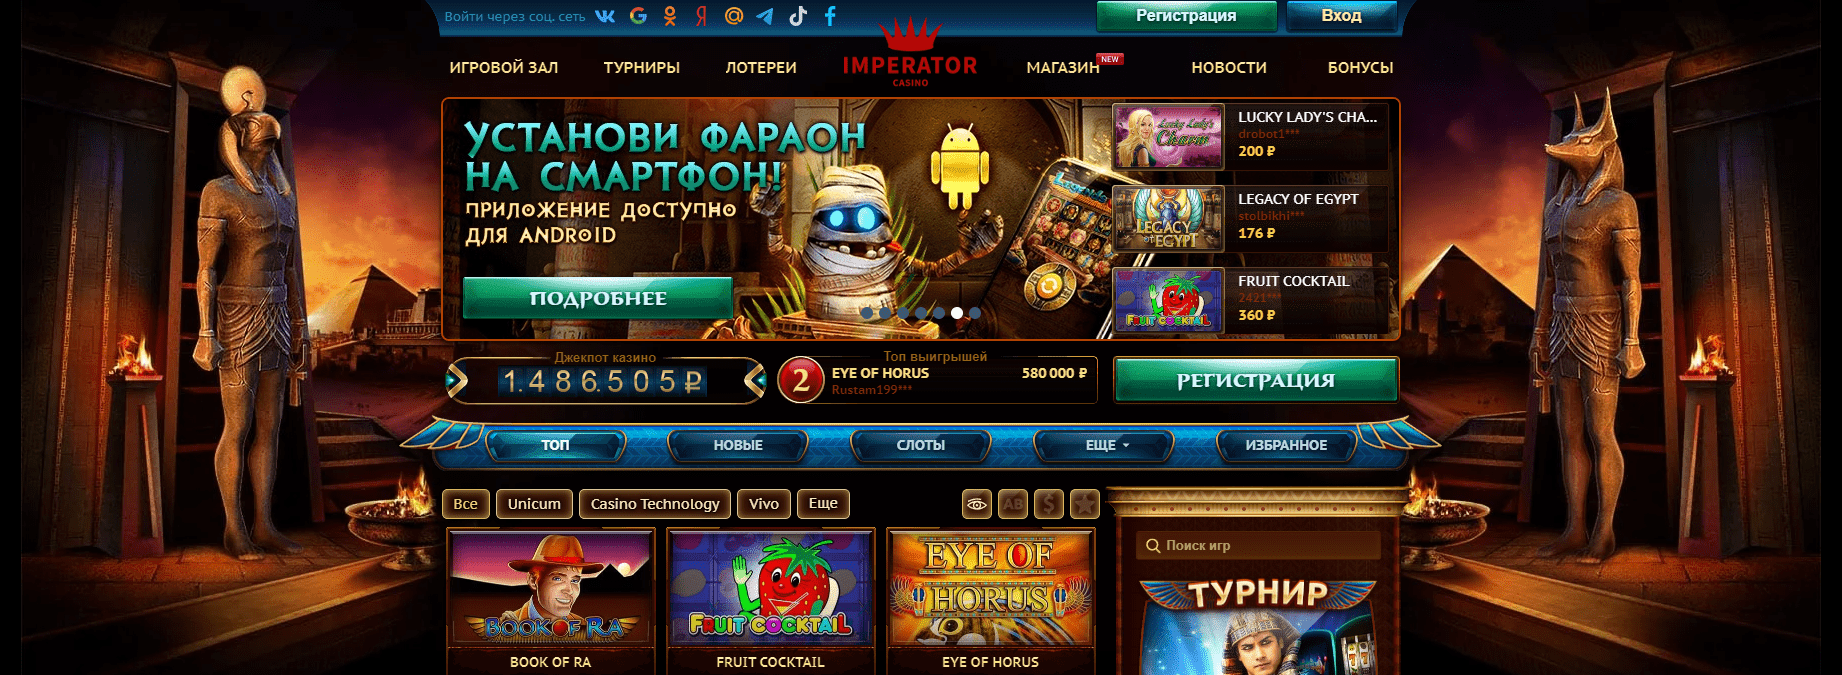 Официальный сайт casino Император